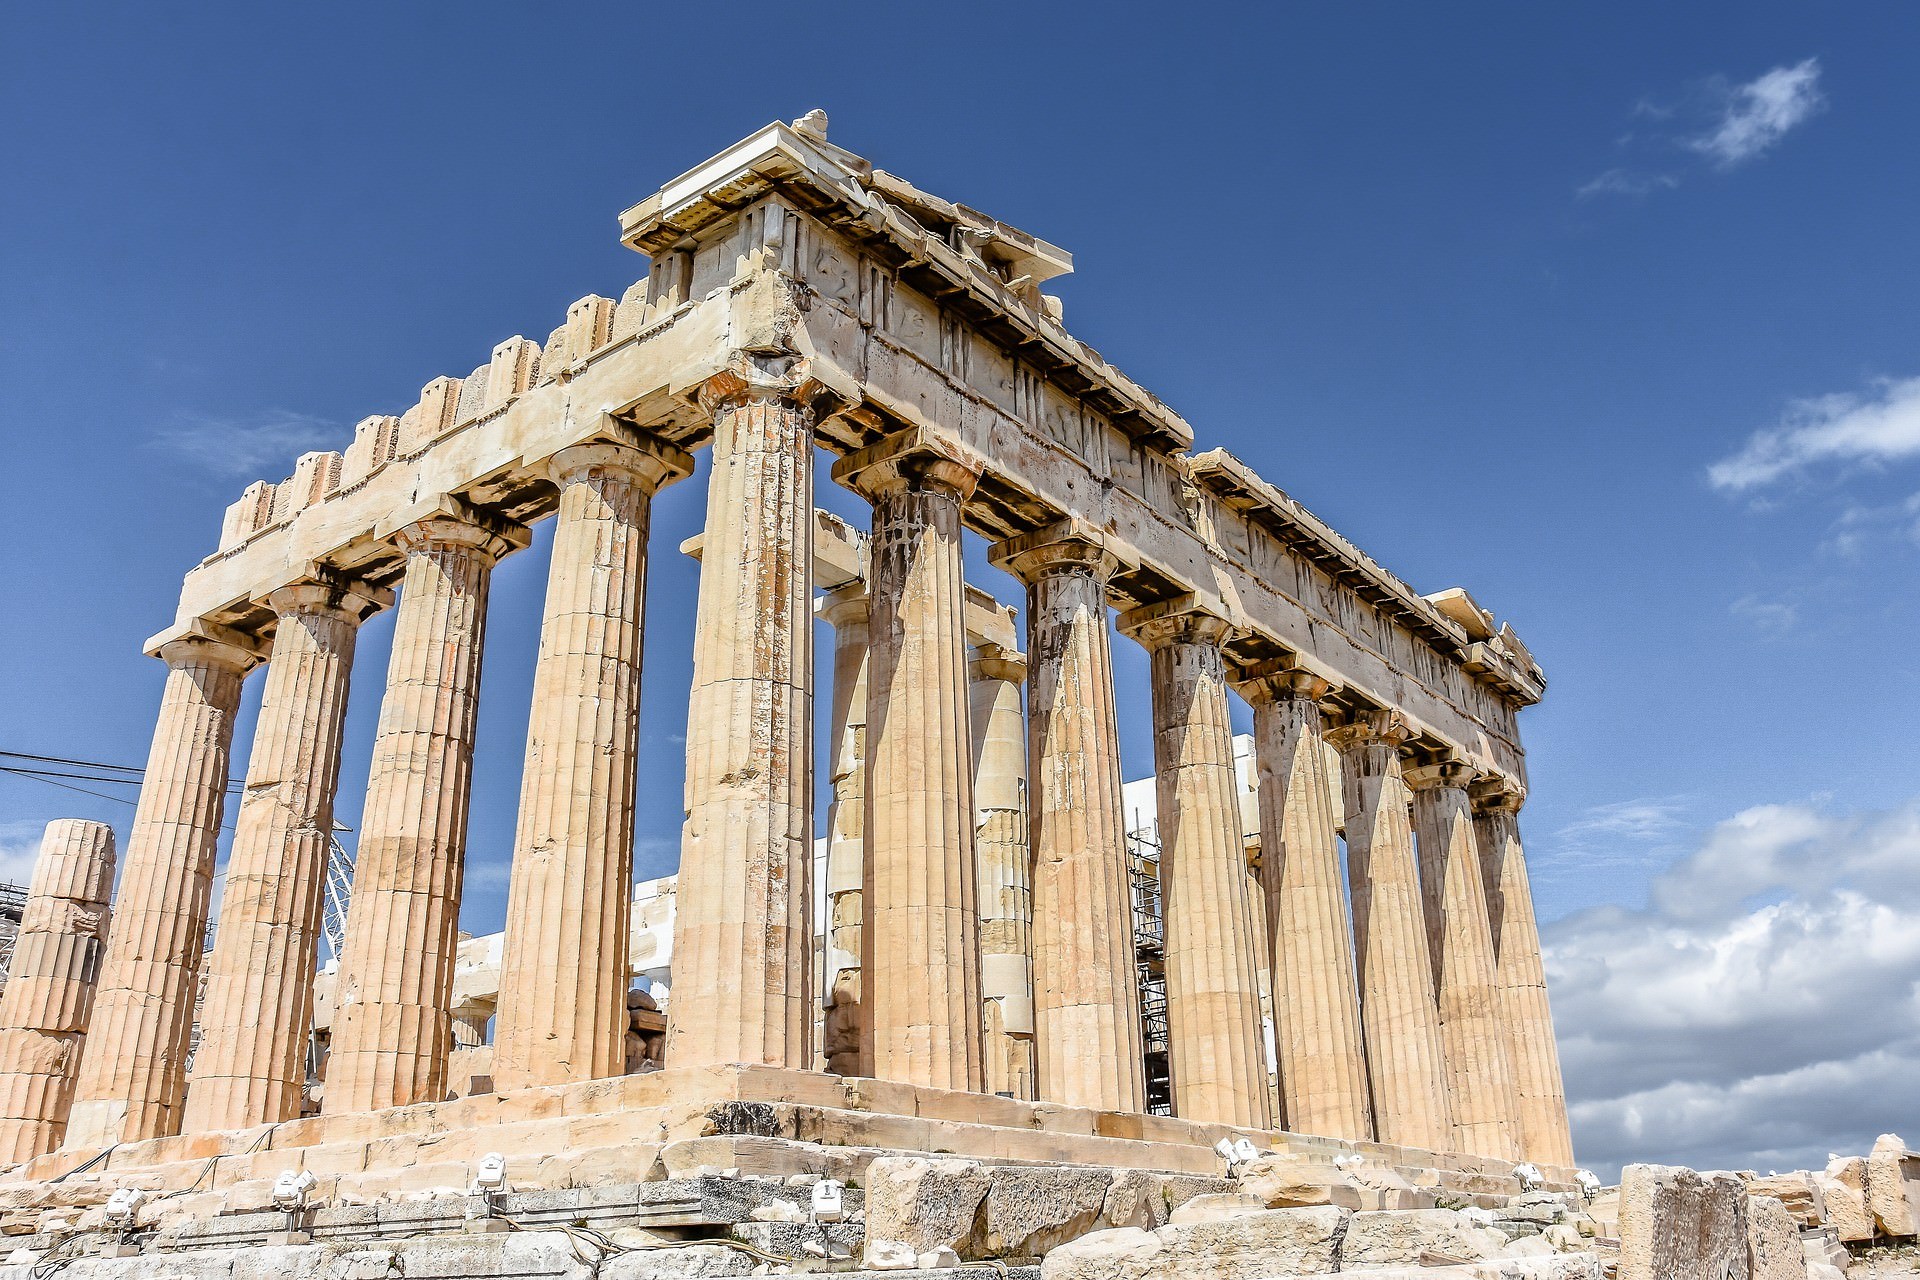 Visit the Acropolis!